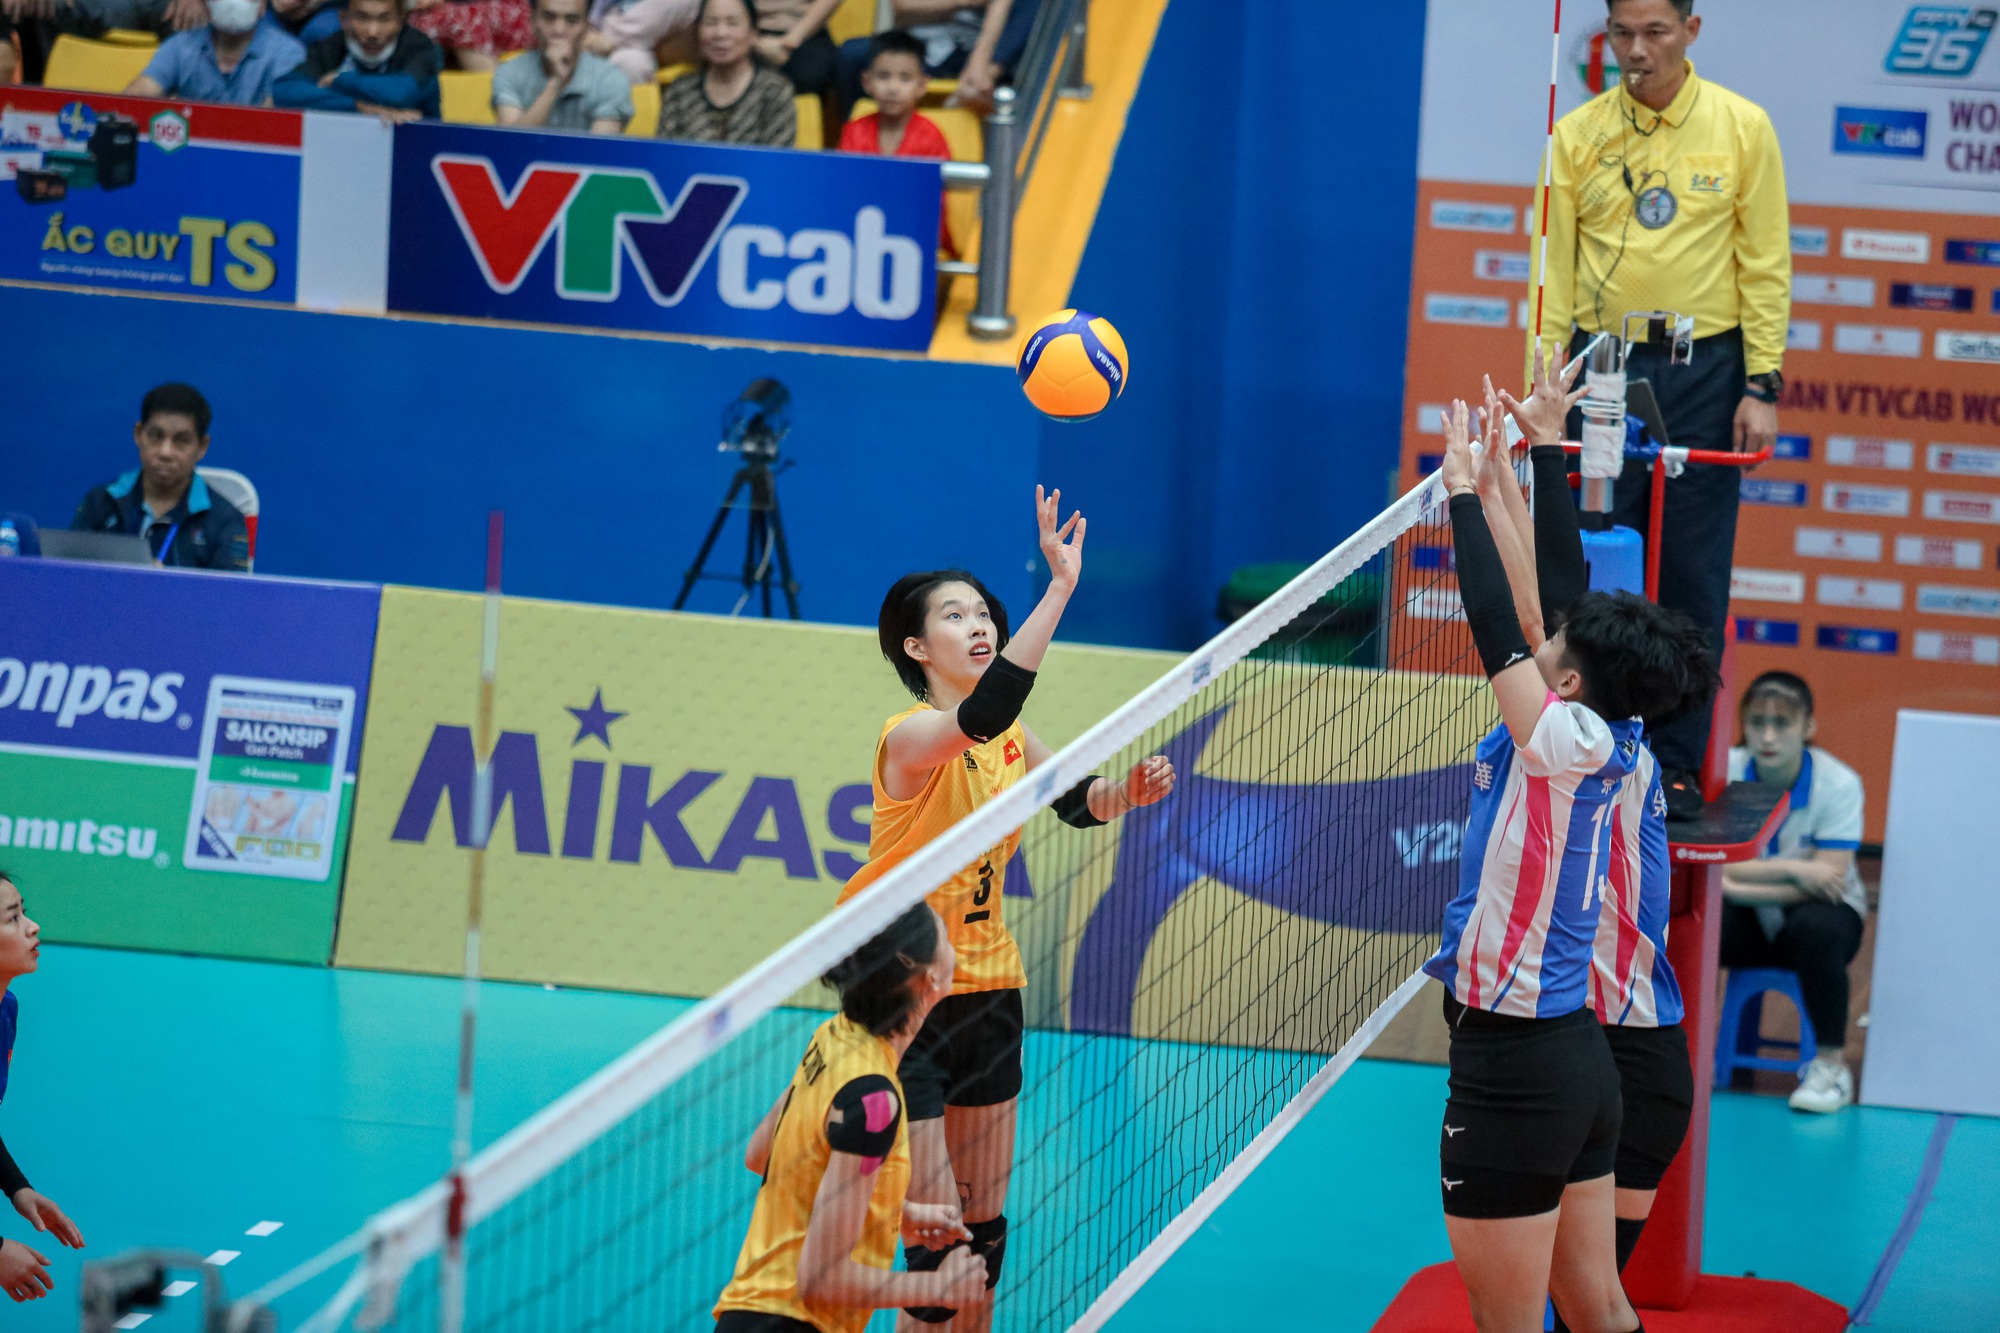 Toàn thắng vòng bảng, tuyển bóng chuyền nữ Việt Nam đoạt vé bán kết AVC Cup - Ảnh 1.